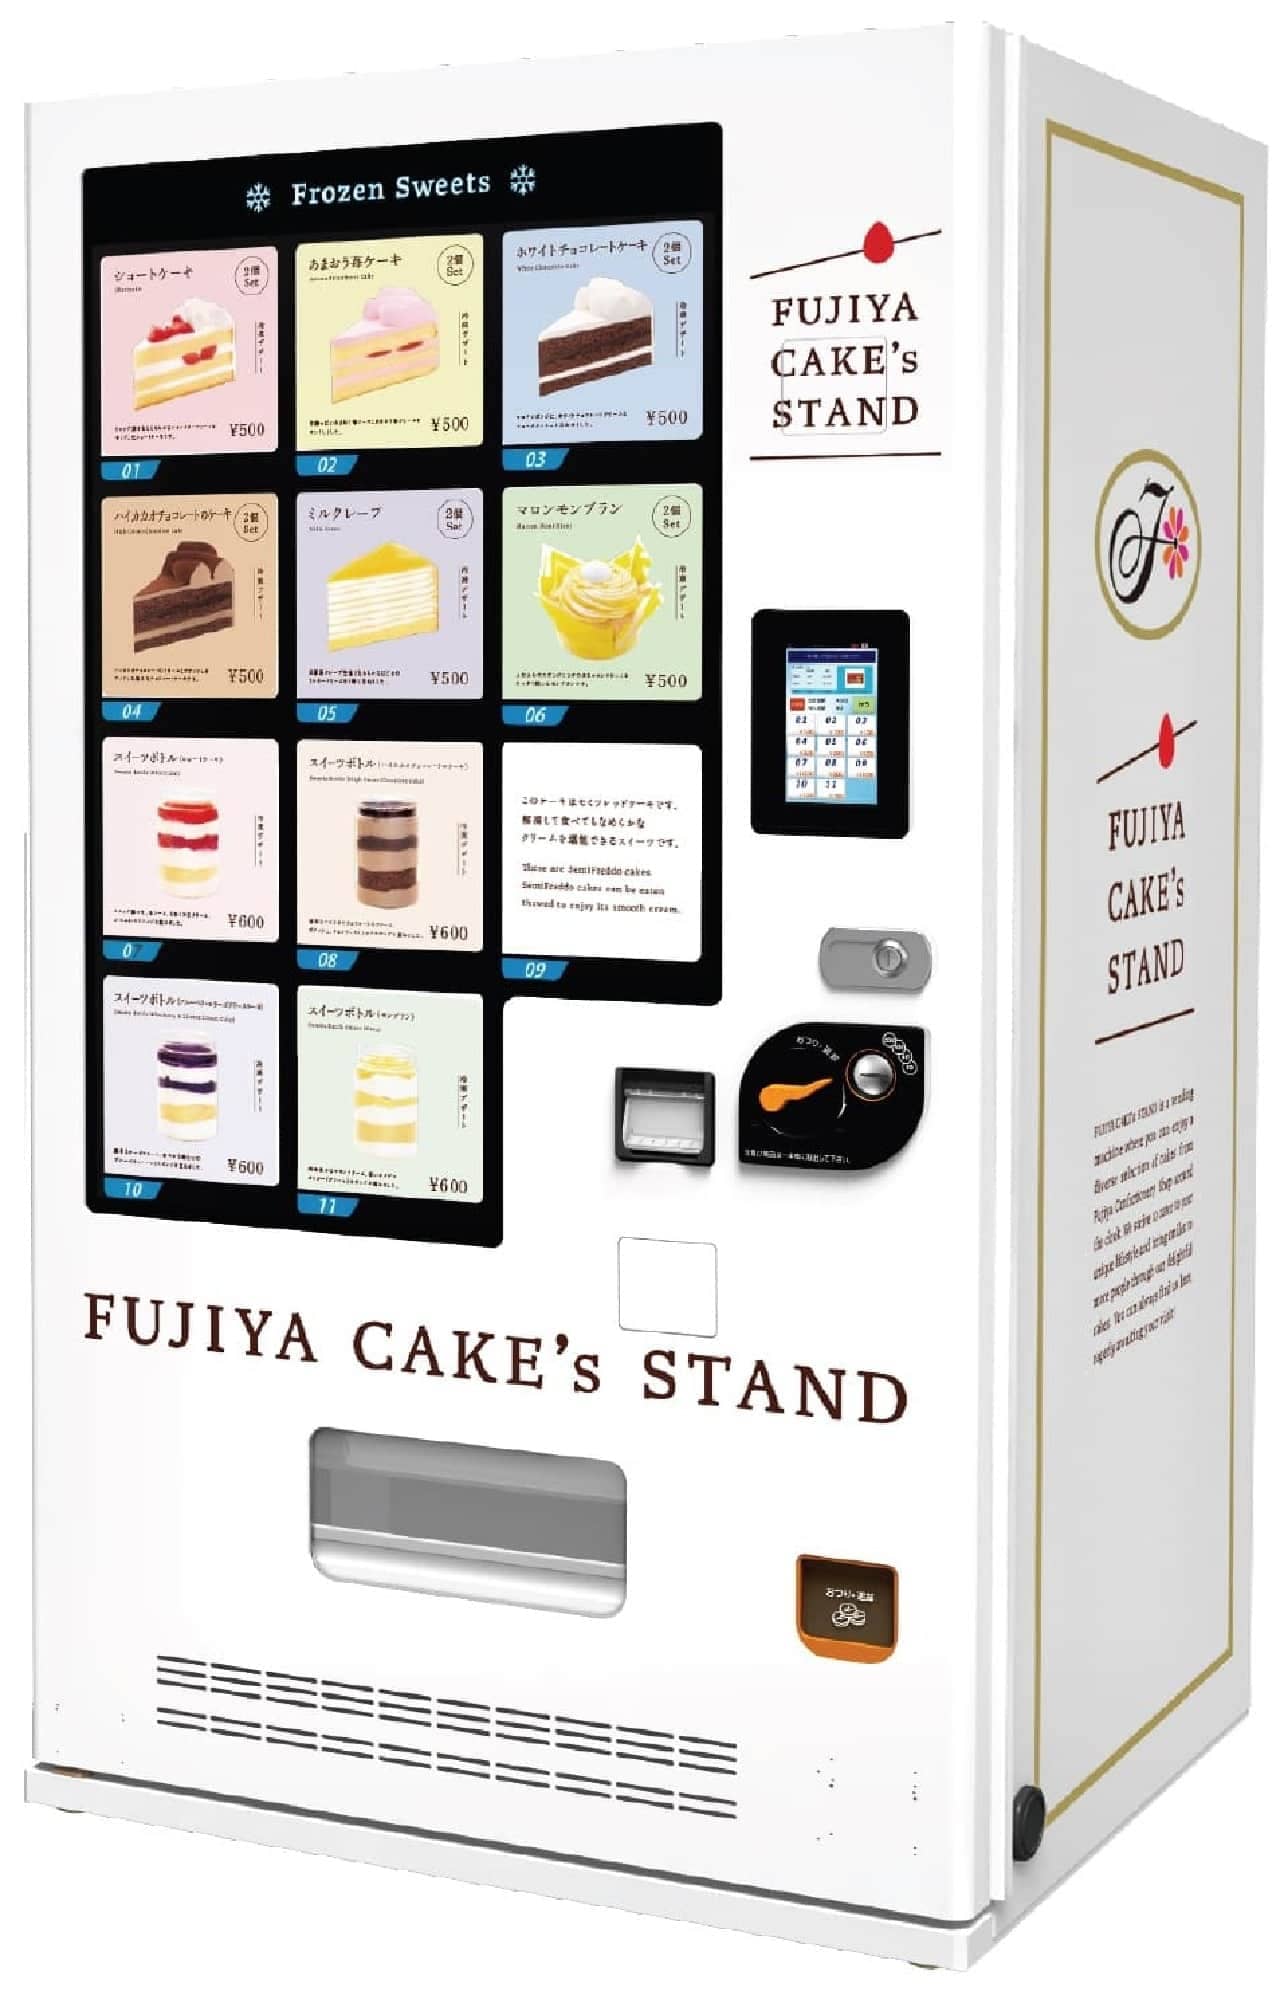 不二家の冷凍スイーツ自販機「FUJIYA CAKE's STAND」